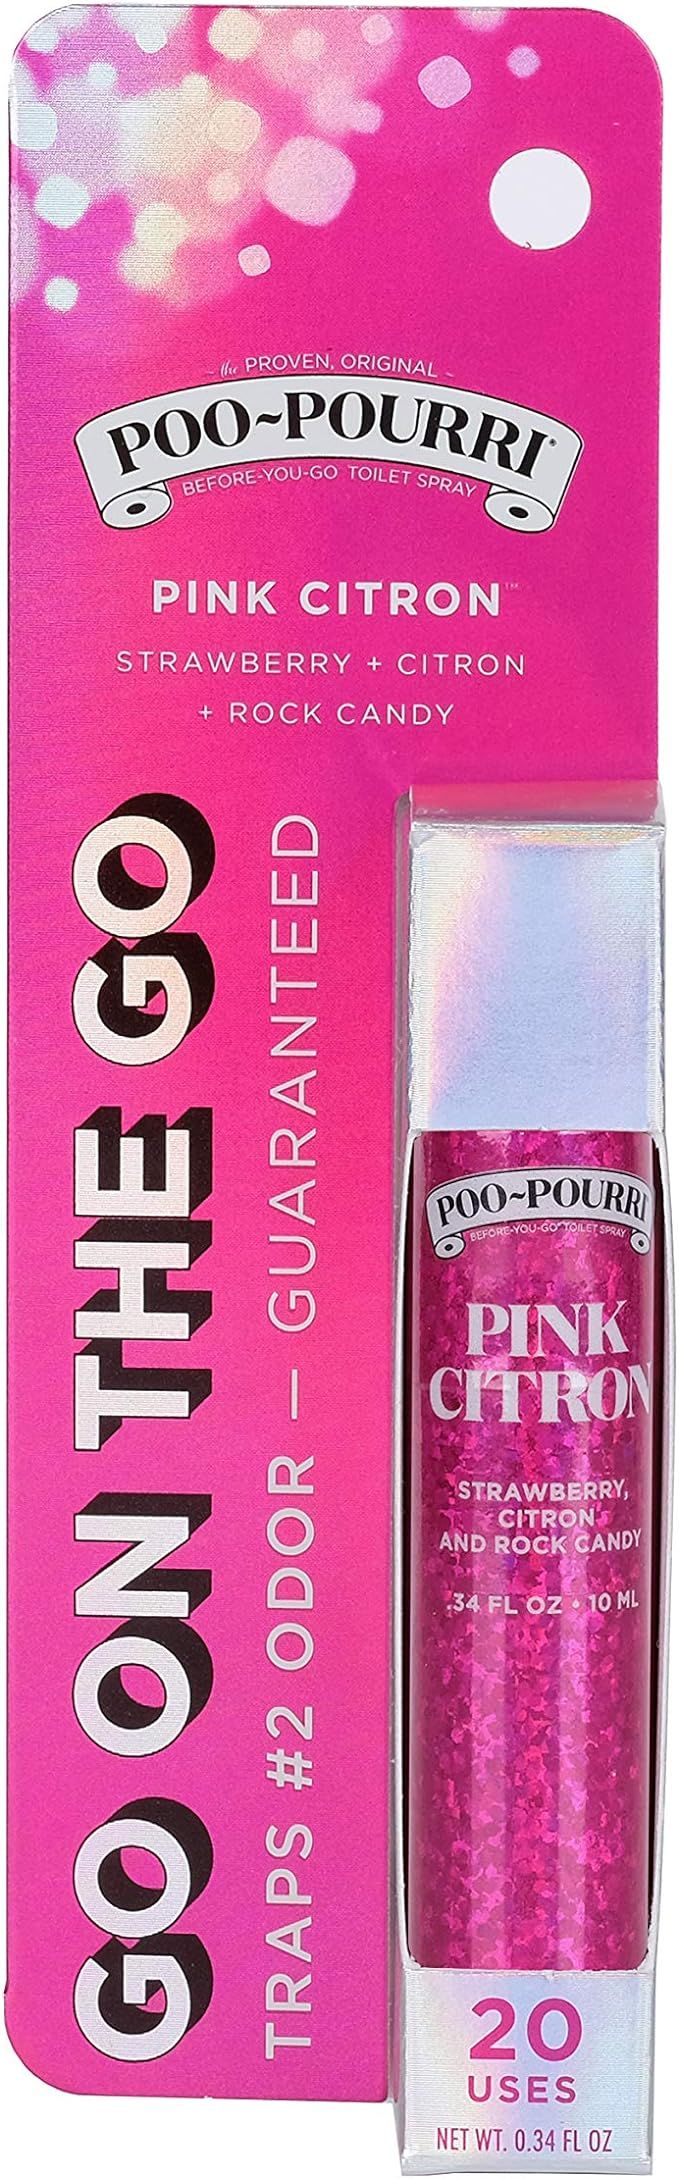 Poo-Pourri Before-You-go Toilet Spray.34 Fl Oz, Pink Citron | Amazon (US)